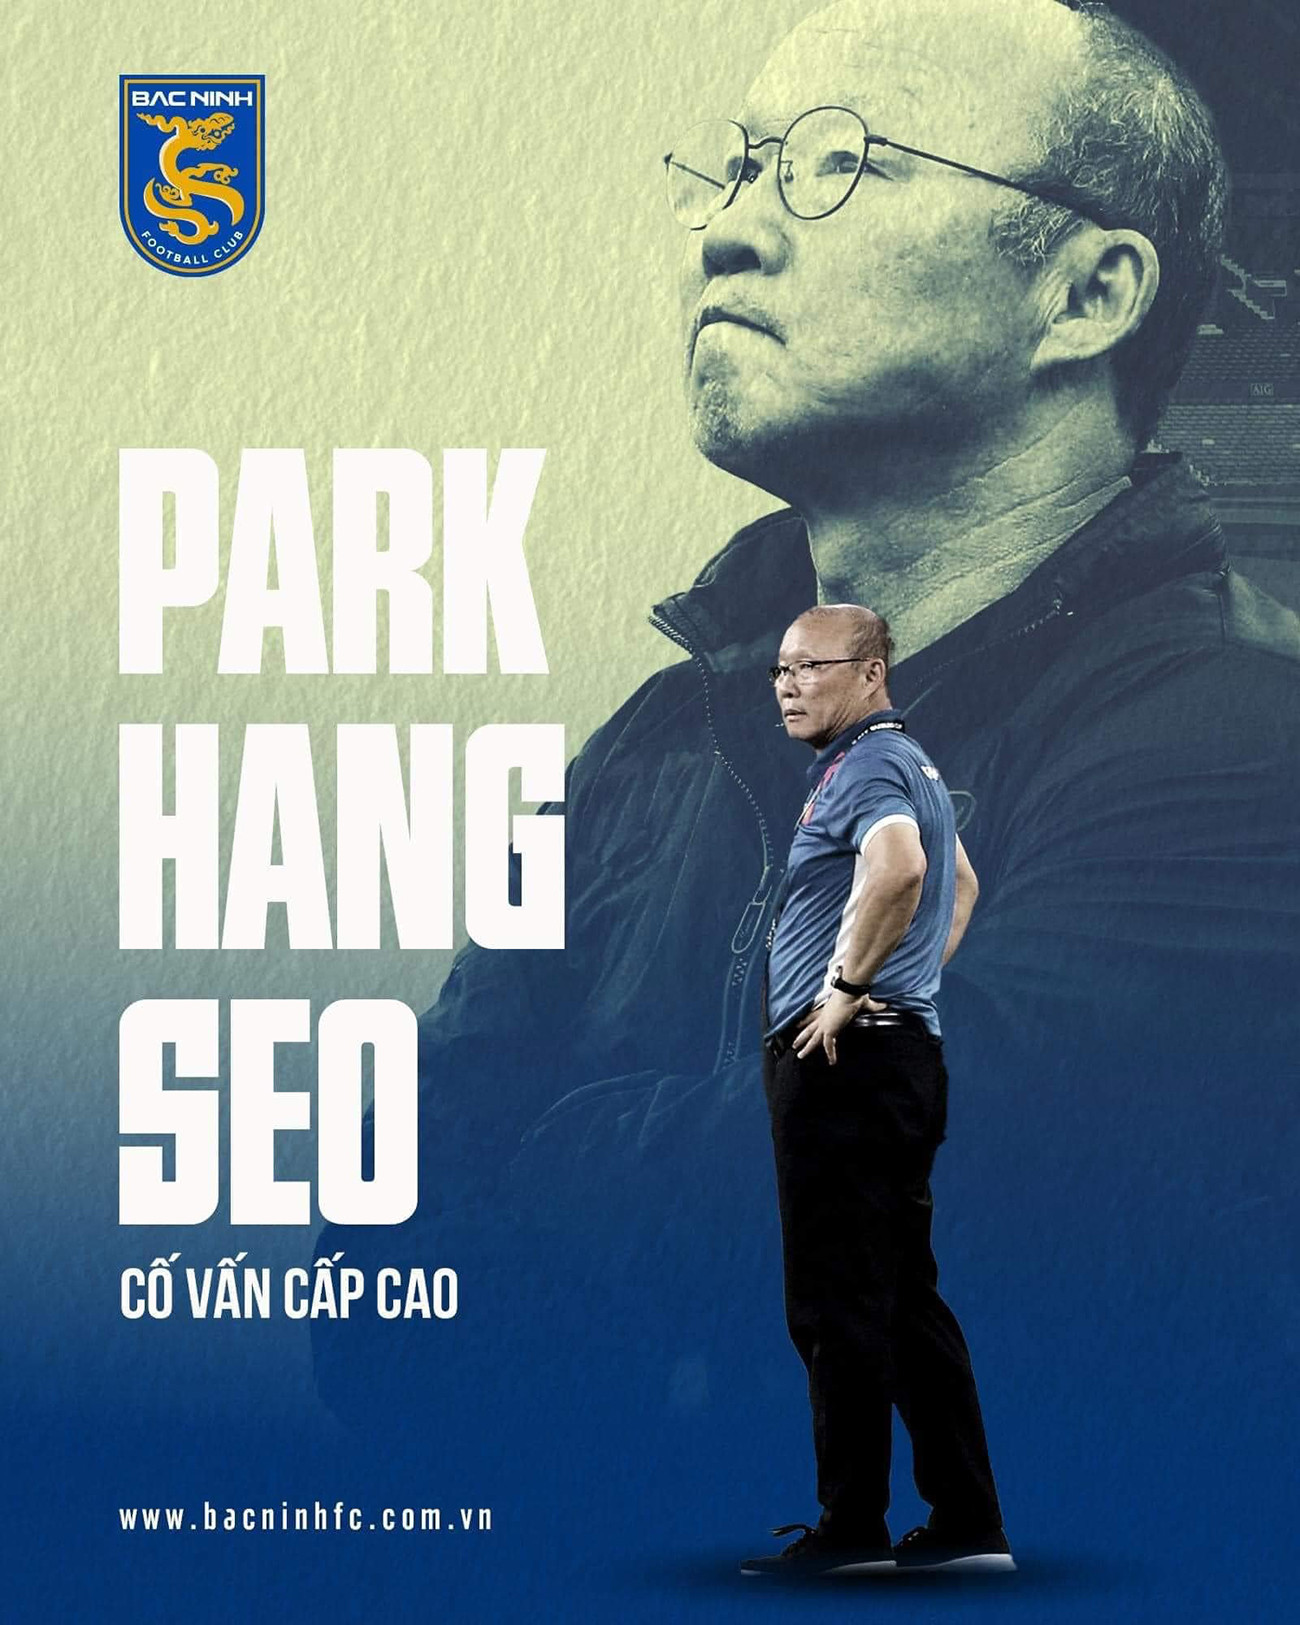 HLV Park Hang Seo vẫn có thể dẫn dắt một CLB hay ĐTQG khác trong thời gian làm cố vấn cấp cao cho Bắc Ninh FC